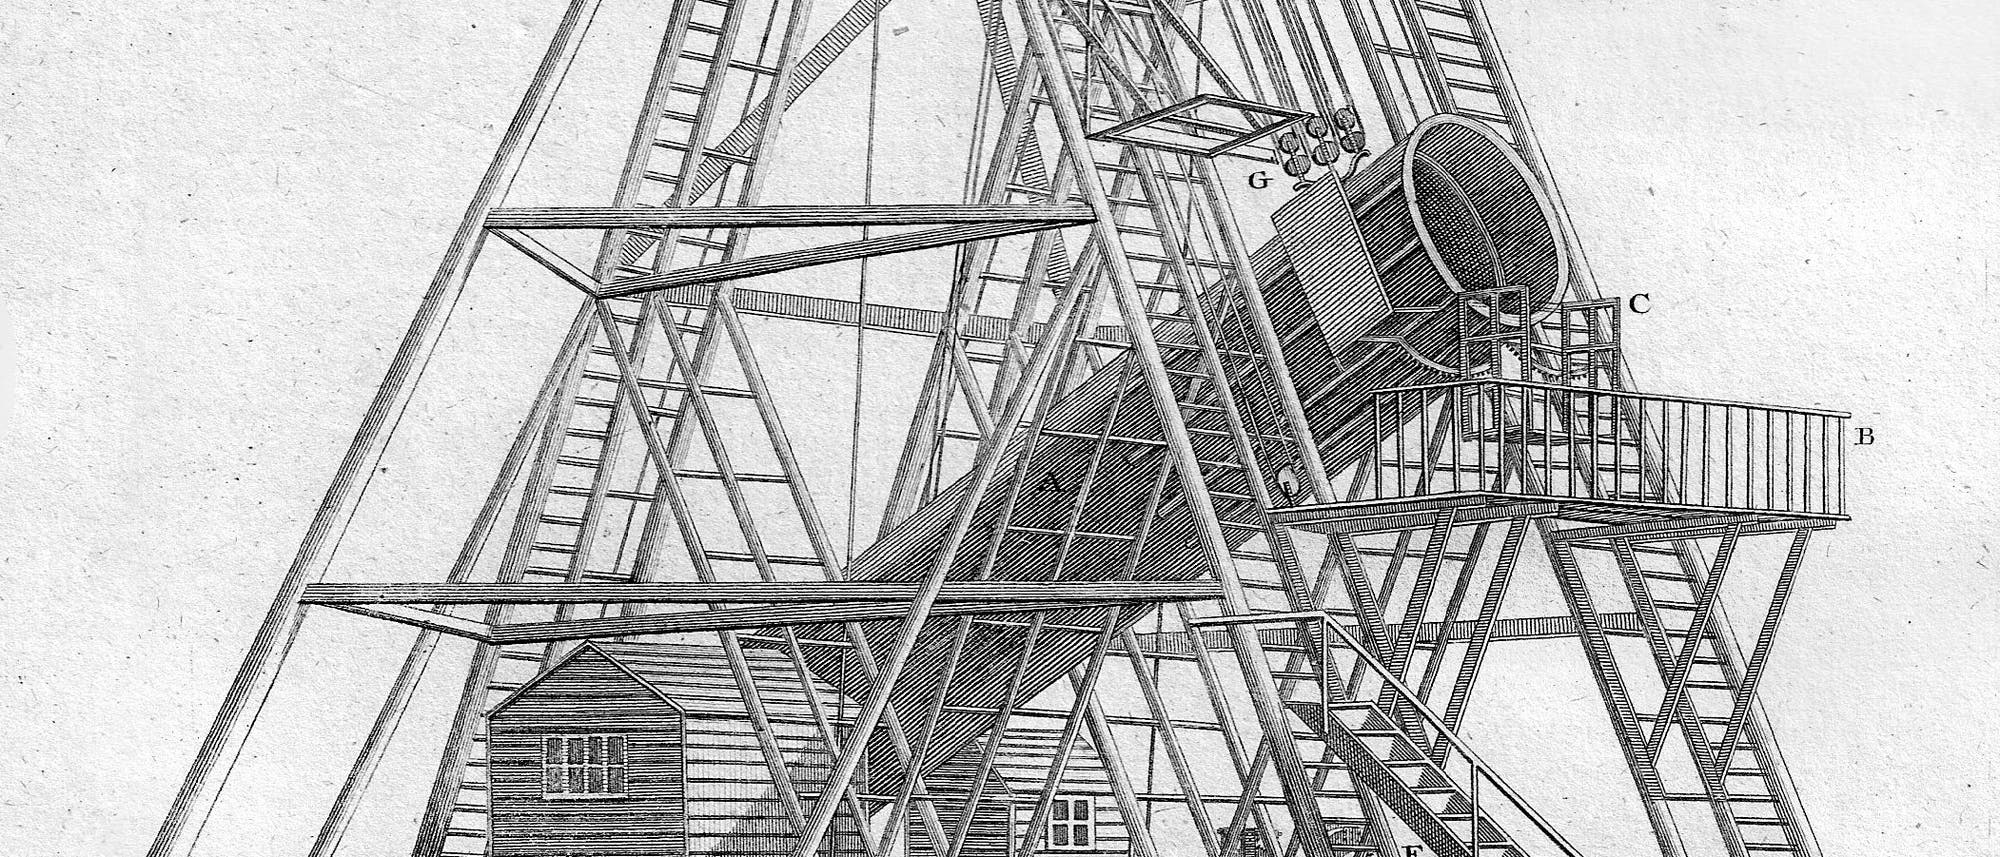 Das von William Herschel errichtete Teleskop